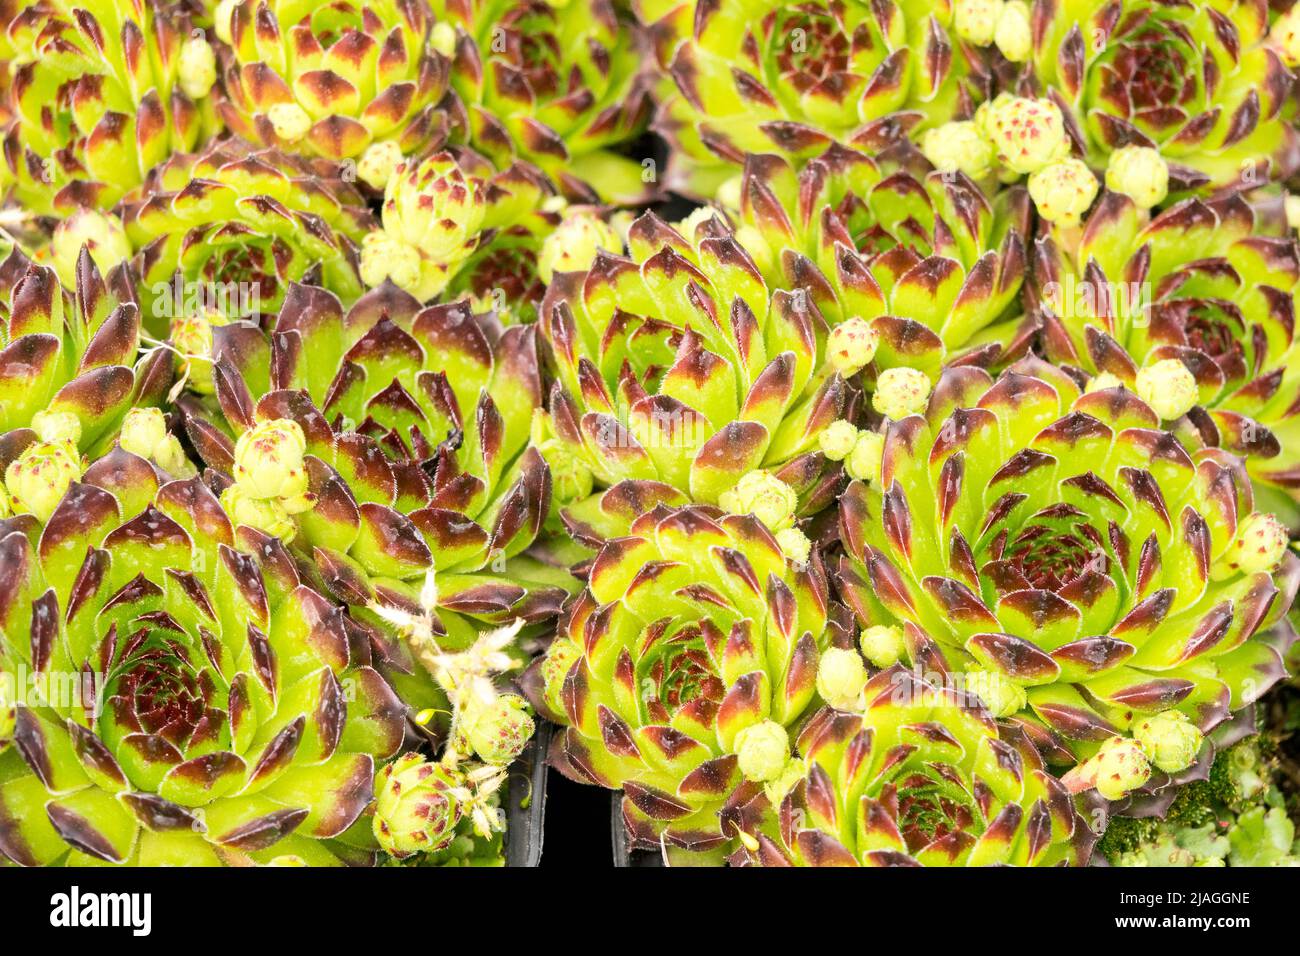 Sempervivum Black Top, Ornamental, Plant, Sempervivum, Houseleeks, Hen and chicks, Decorative, Close up, Houseleek Stock Photo